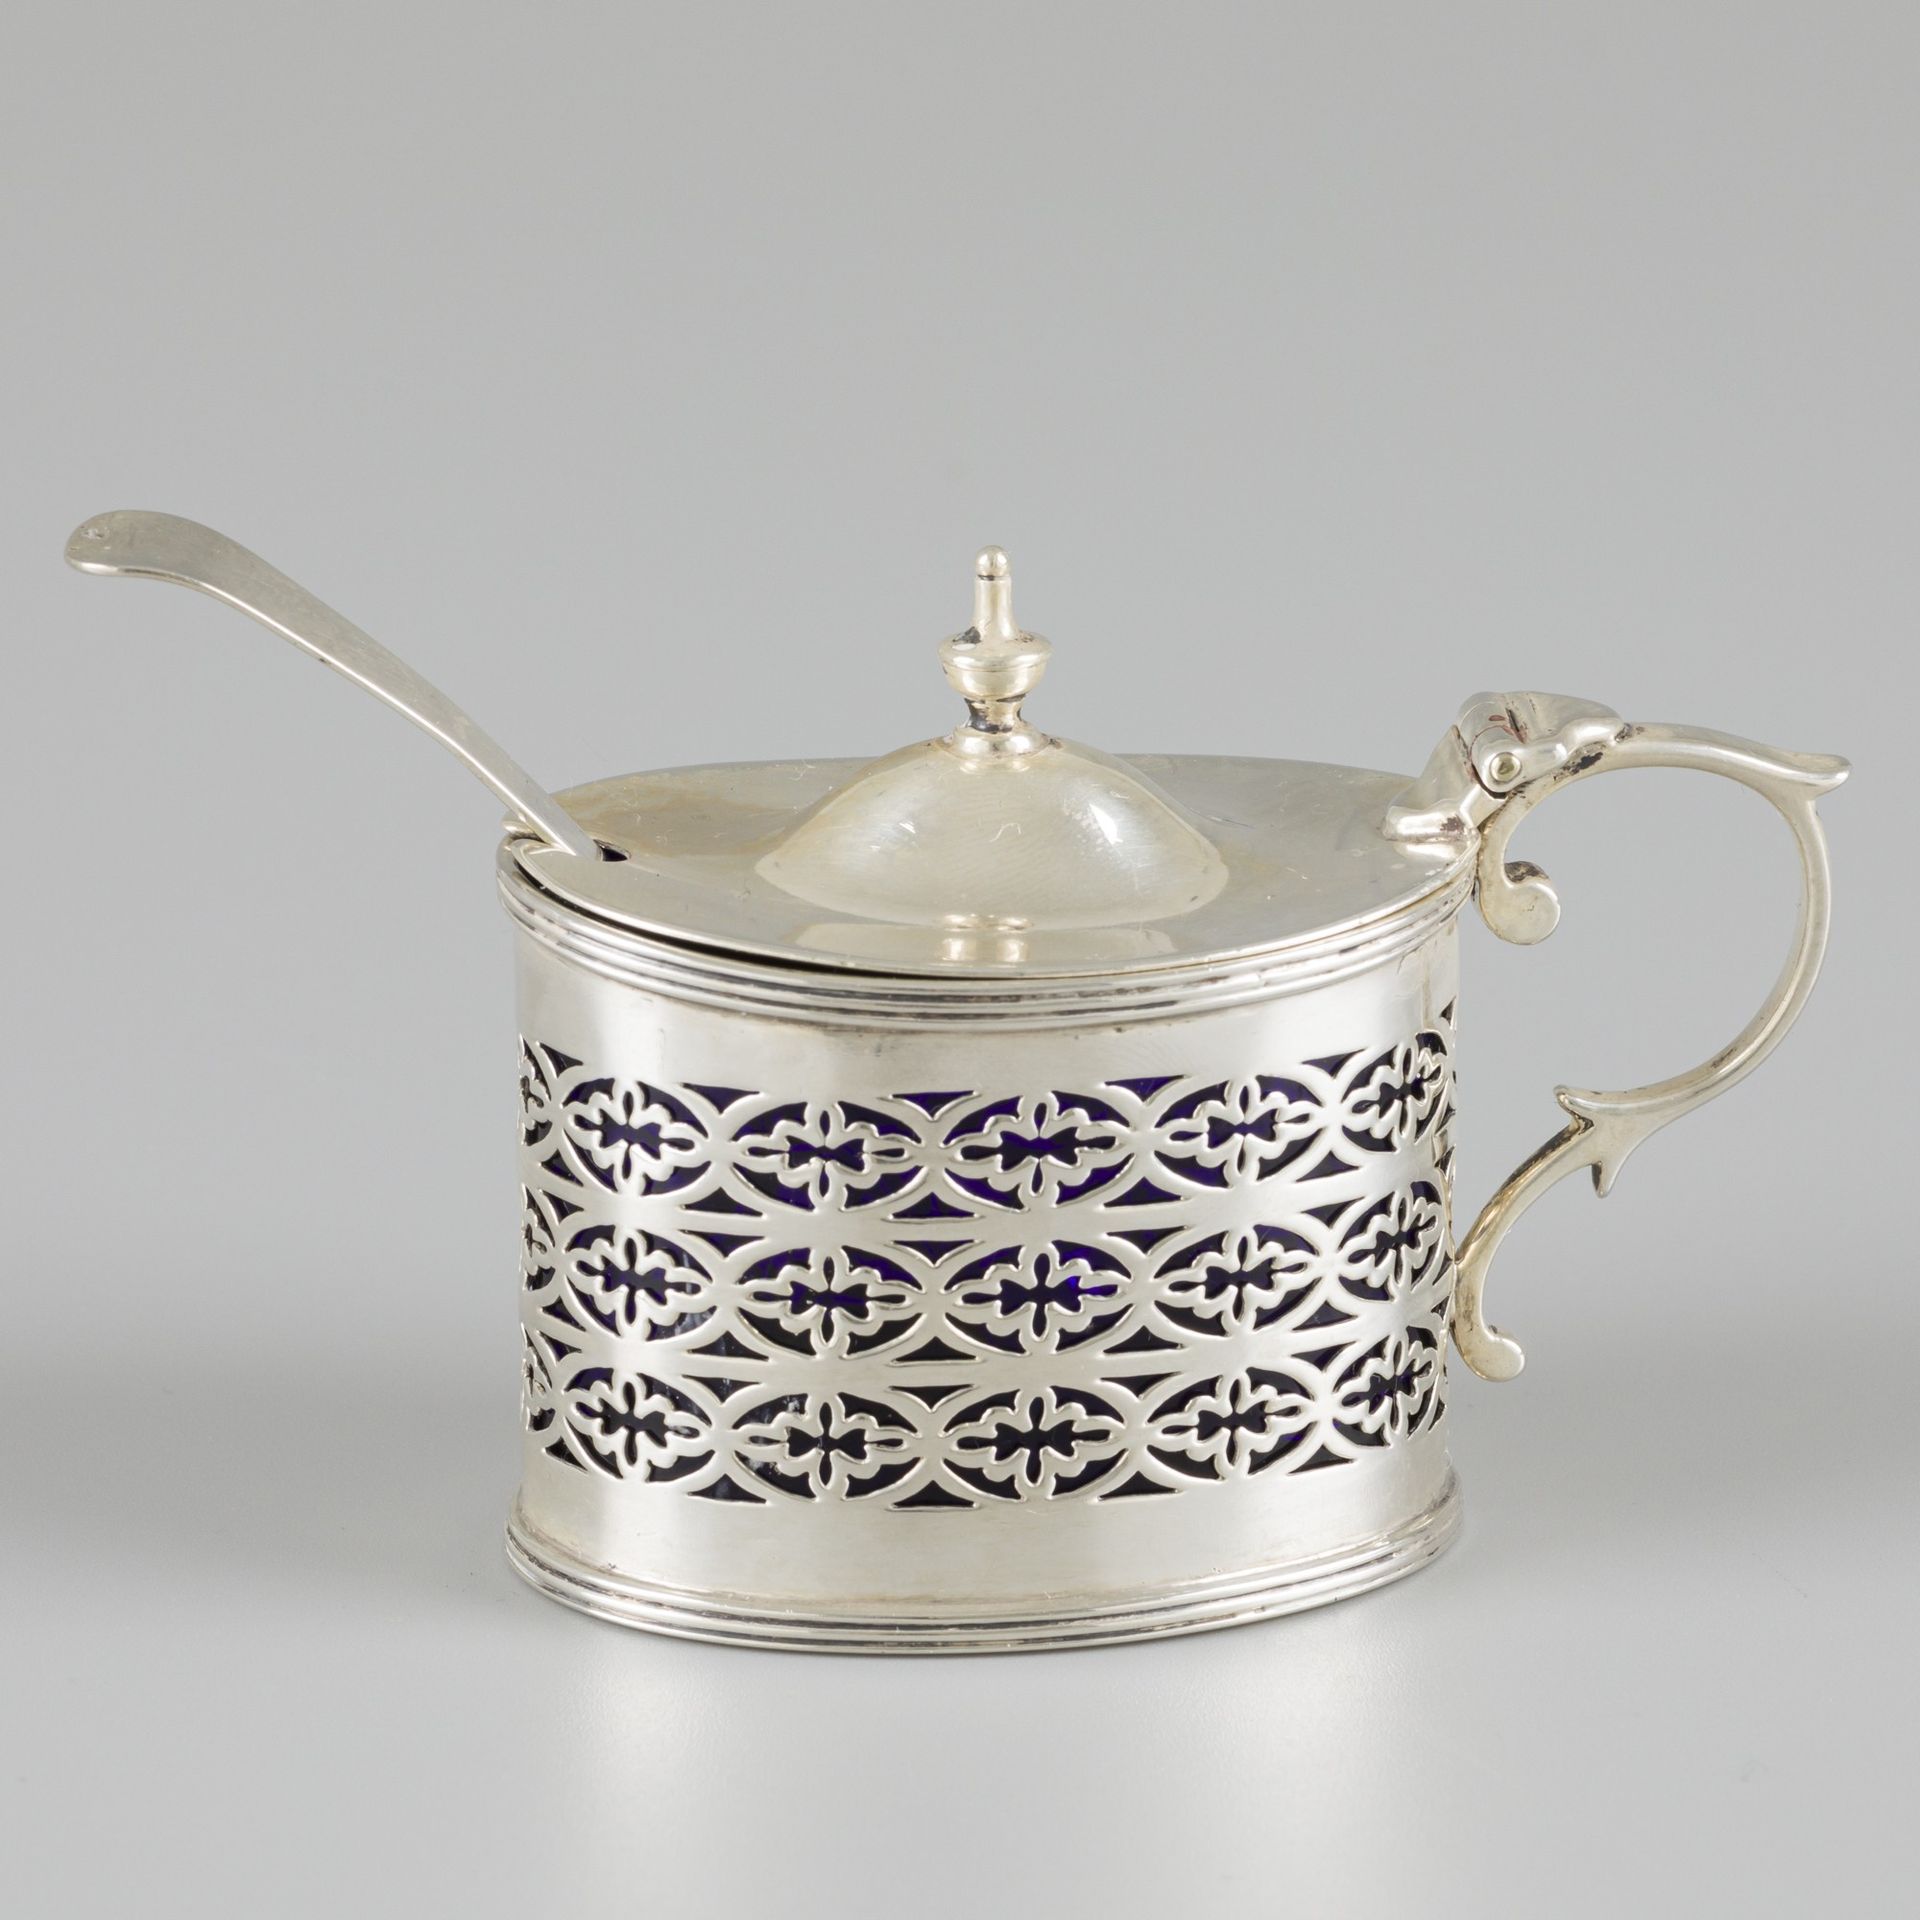 Mustard pot with spoon, silver. Ovales Modell mit Scharnierdeckel, Einfassung un&hellip;